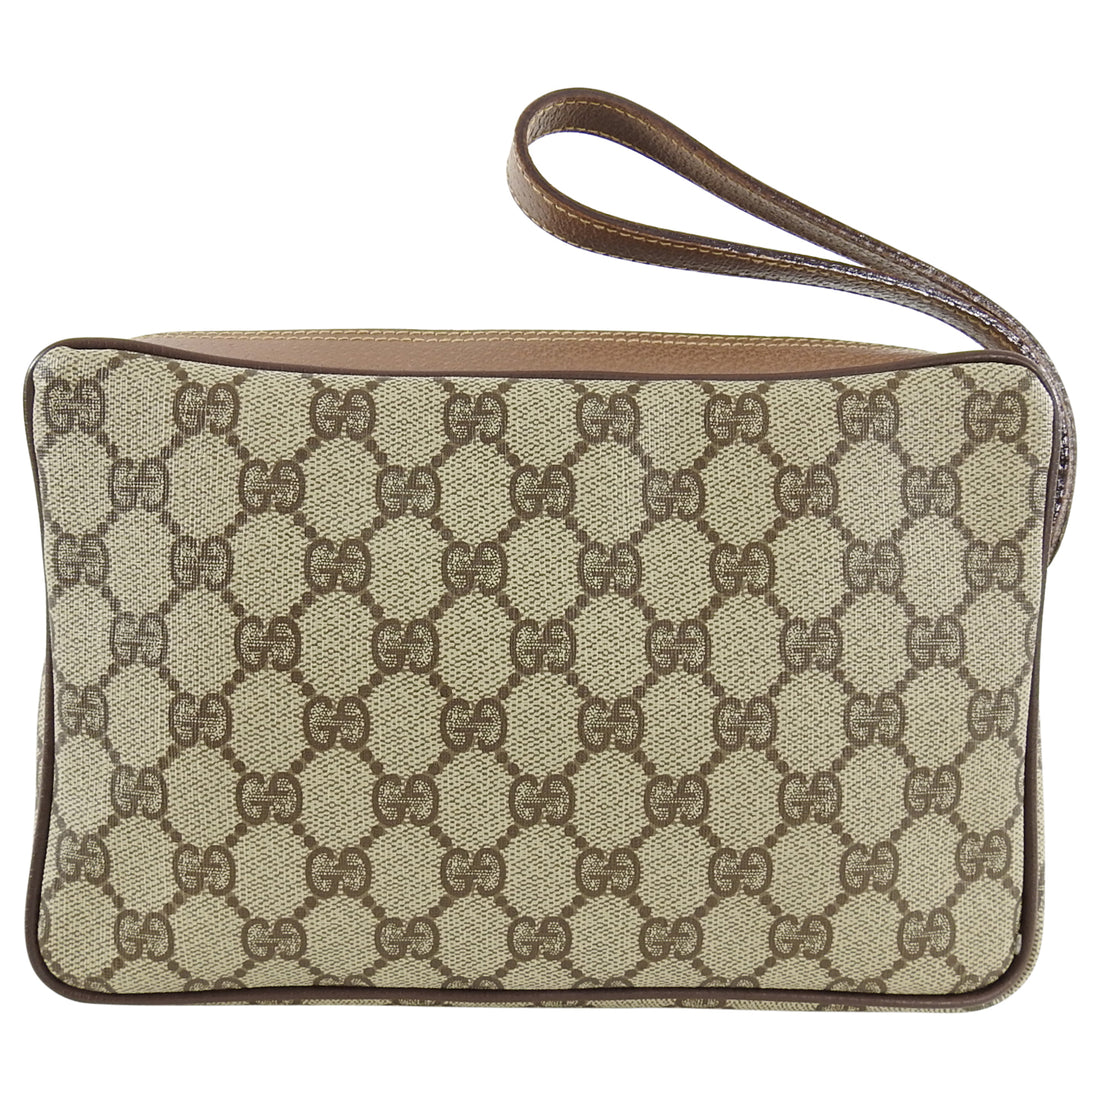 Gucci Vintage Monogram Clutch Wristlet Bag – I MISS YOU VINTAGE